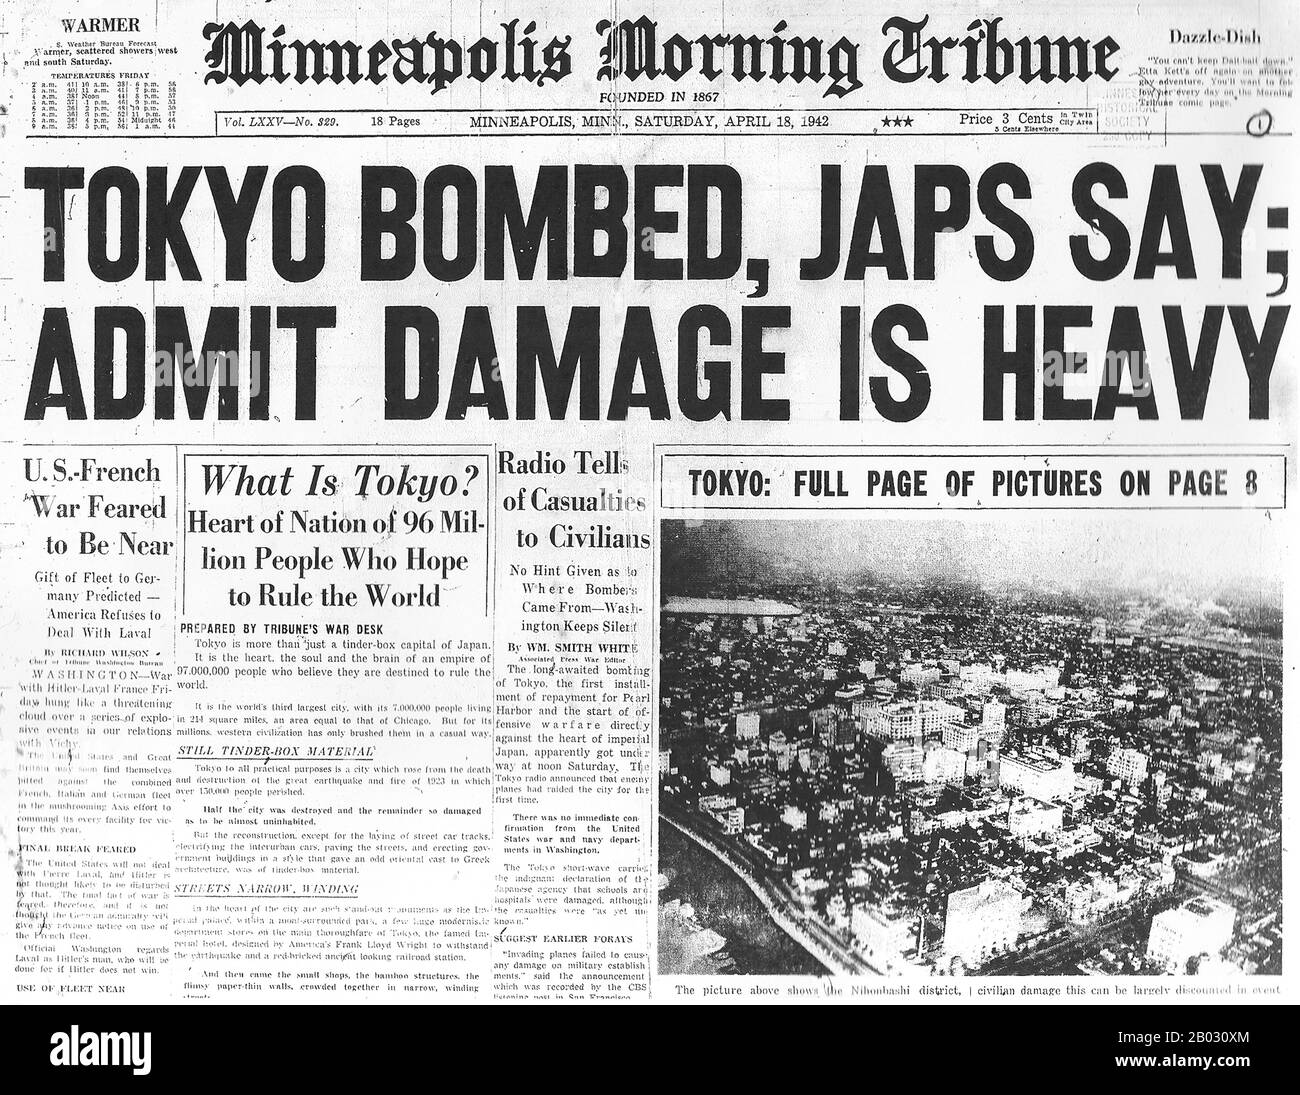 Der Doolittle Raid, auch bekannt als Tokioter Überfall, am 18. April 1942 war ein luftangriff der Vereinigten Staaten auf die japanische Hauptstadt Tokio und andere Orte auf der Honshu-Insel während des zweiten Weltkriegs, der erste luftangriff, der die japanischen Home Islands traf. Es zeigte, dass Japan selbst anfällig für amerikanischen Luftangriff war, diente als Vergeltung für den japanischen Angriff auf Pearl Harbor am 7. Dezember 1941 und sorgte für einen wichtigen Schub für die amerikanische Moral bei gleichzeitiger Beschädigung der japanischen Moral. Der überfall wurde von Oberstleutnant James Doolittle geplant und geleitet. Sechzehn US-Army Air Forces B-25B Mitchell Medium Stockfoto